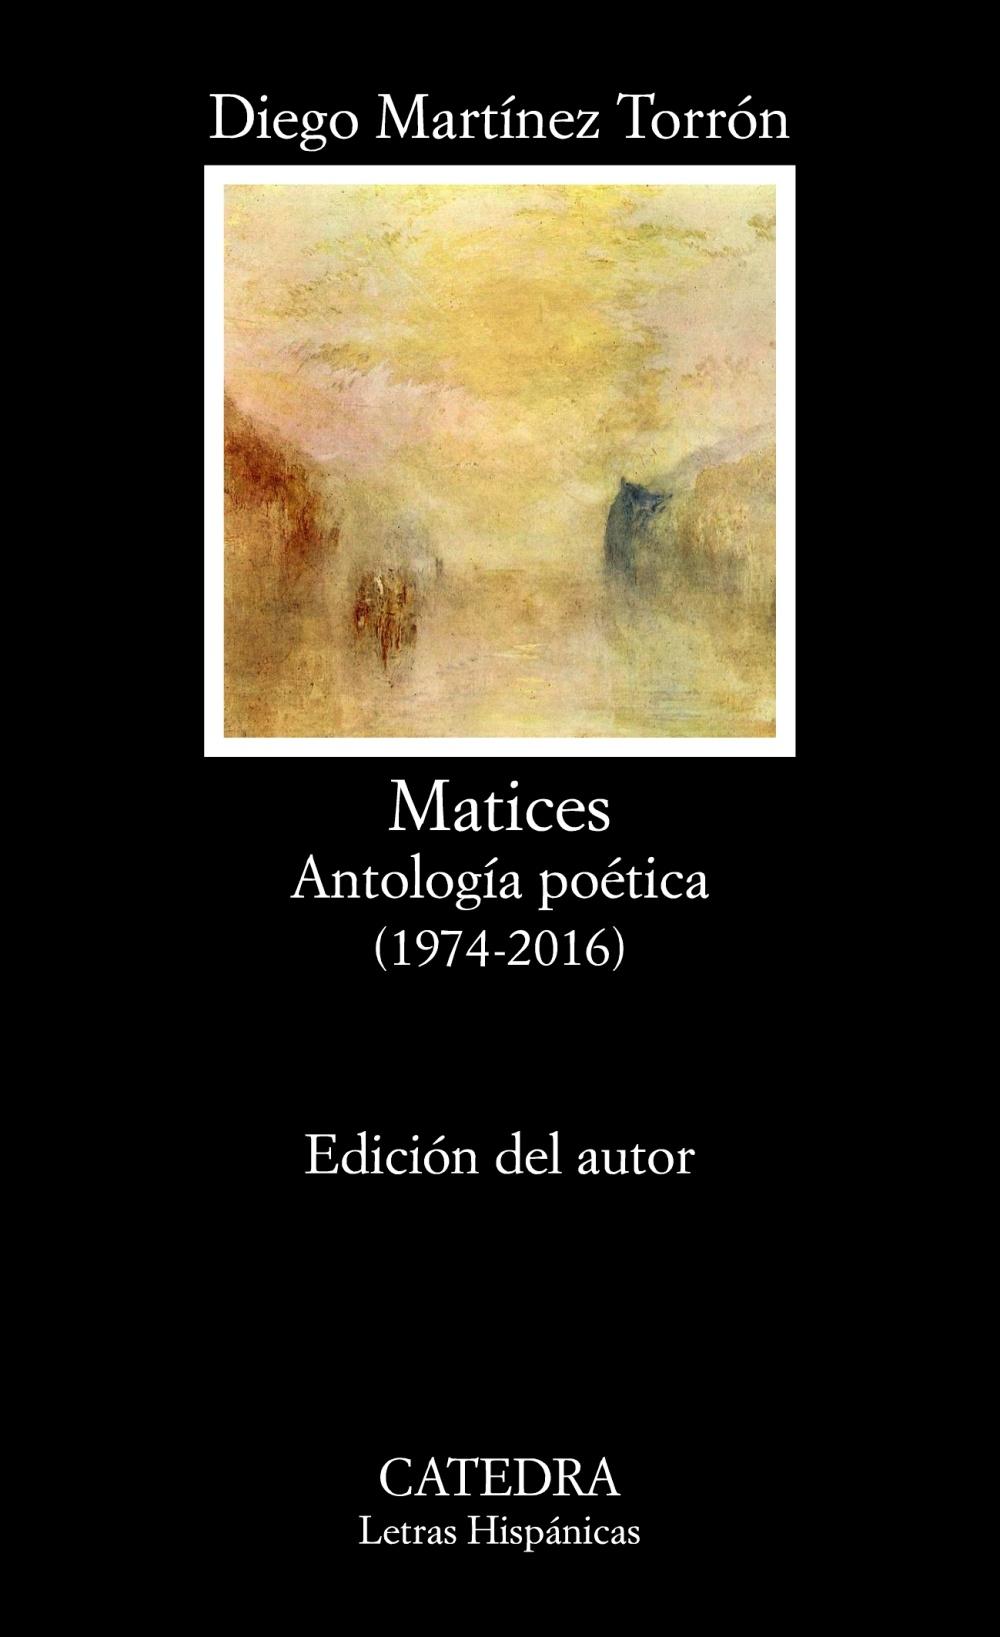 Matices "Antología poética (1974-2016)"